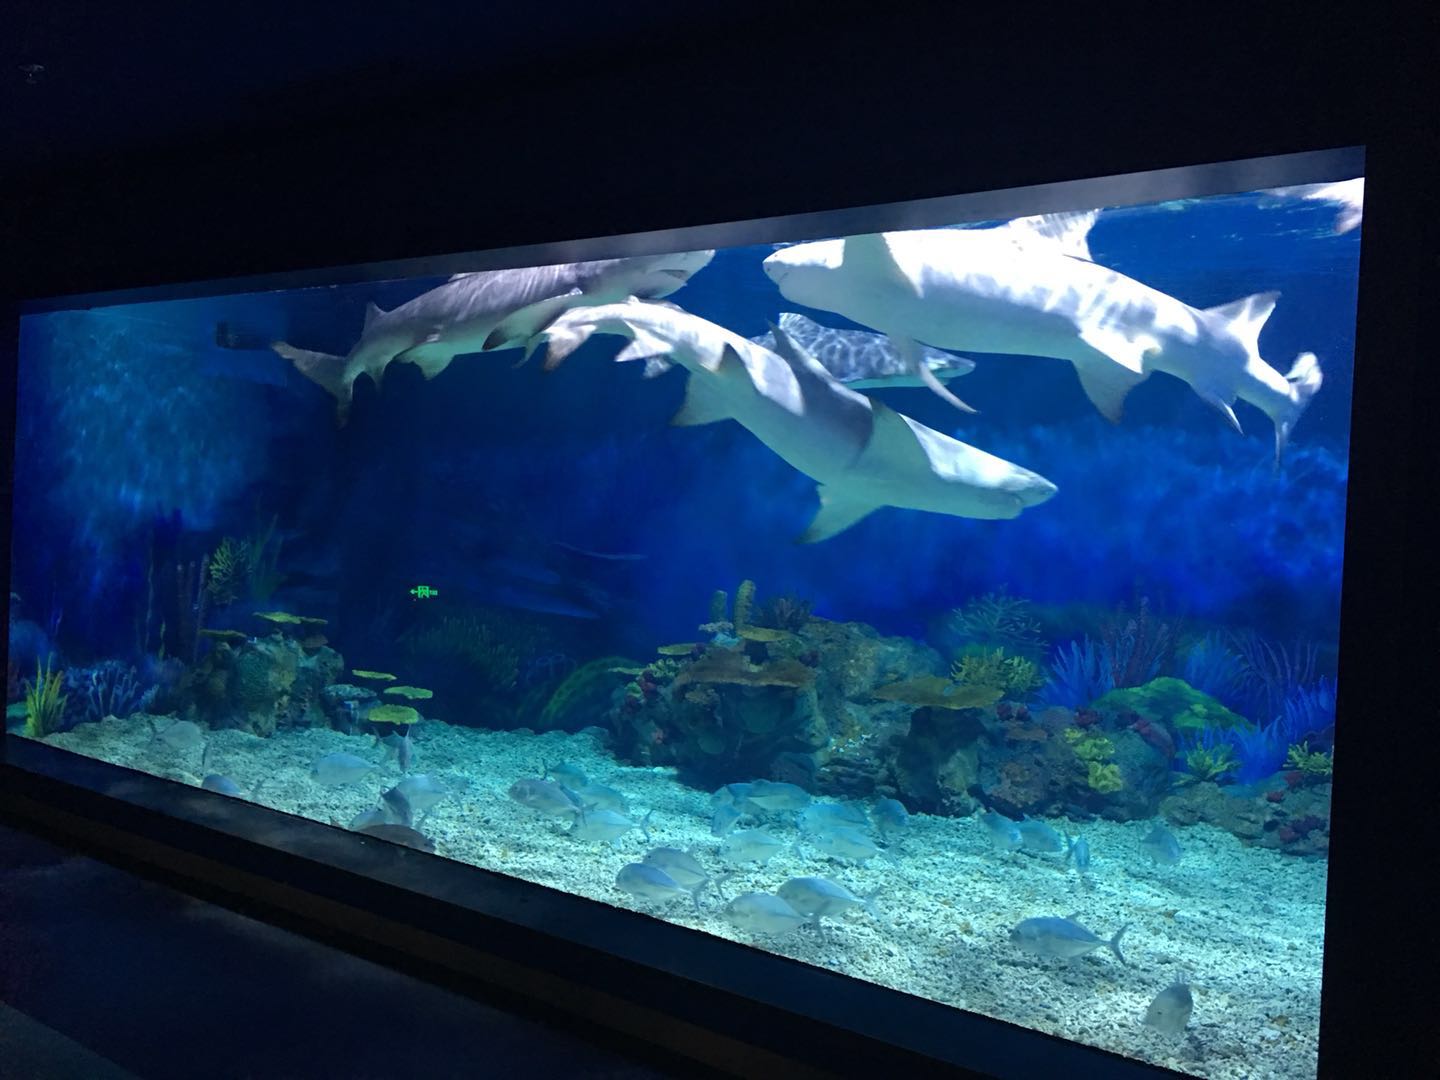 亚克力鱼缸-大型鱼缸定制-海洋馆鱼缸制作-水族馆设计-泳池厂家-上海